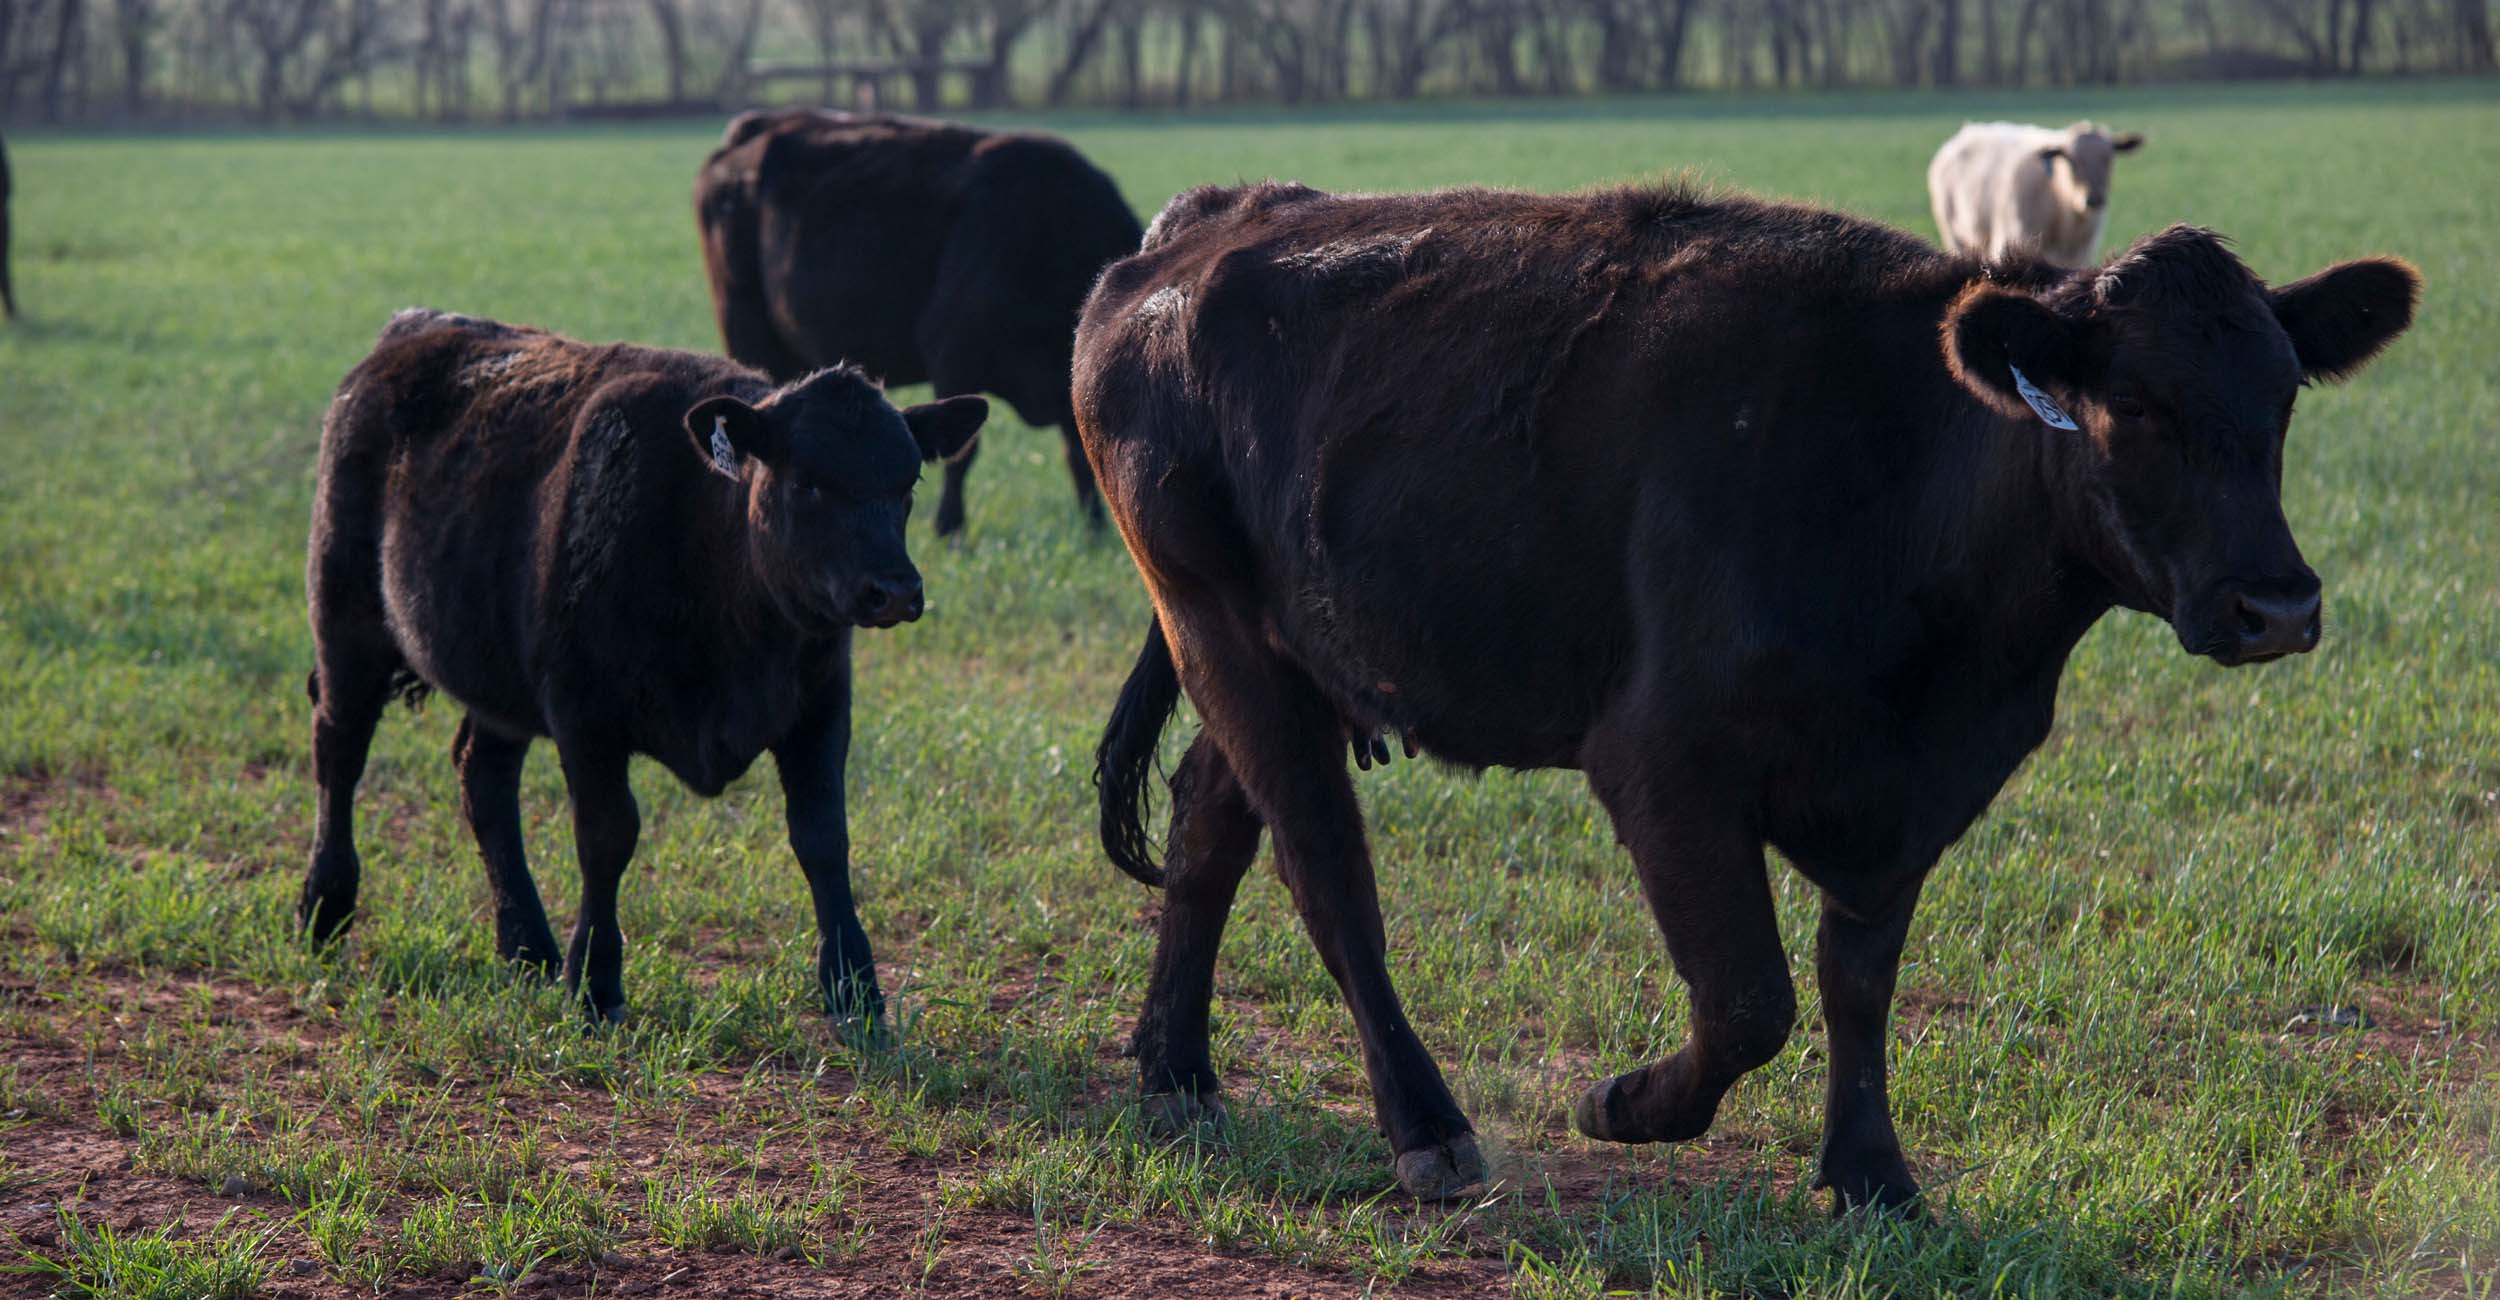 A calf walks behind a cow in a field.